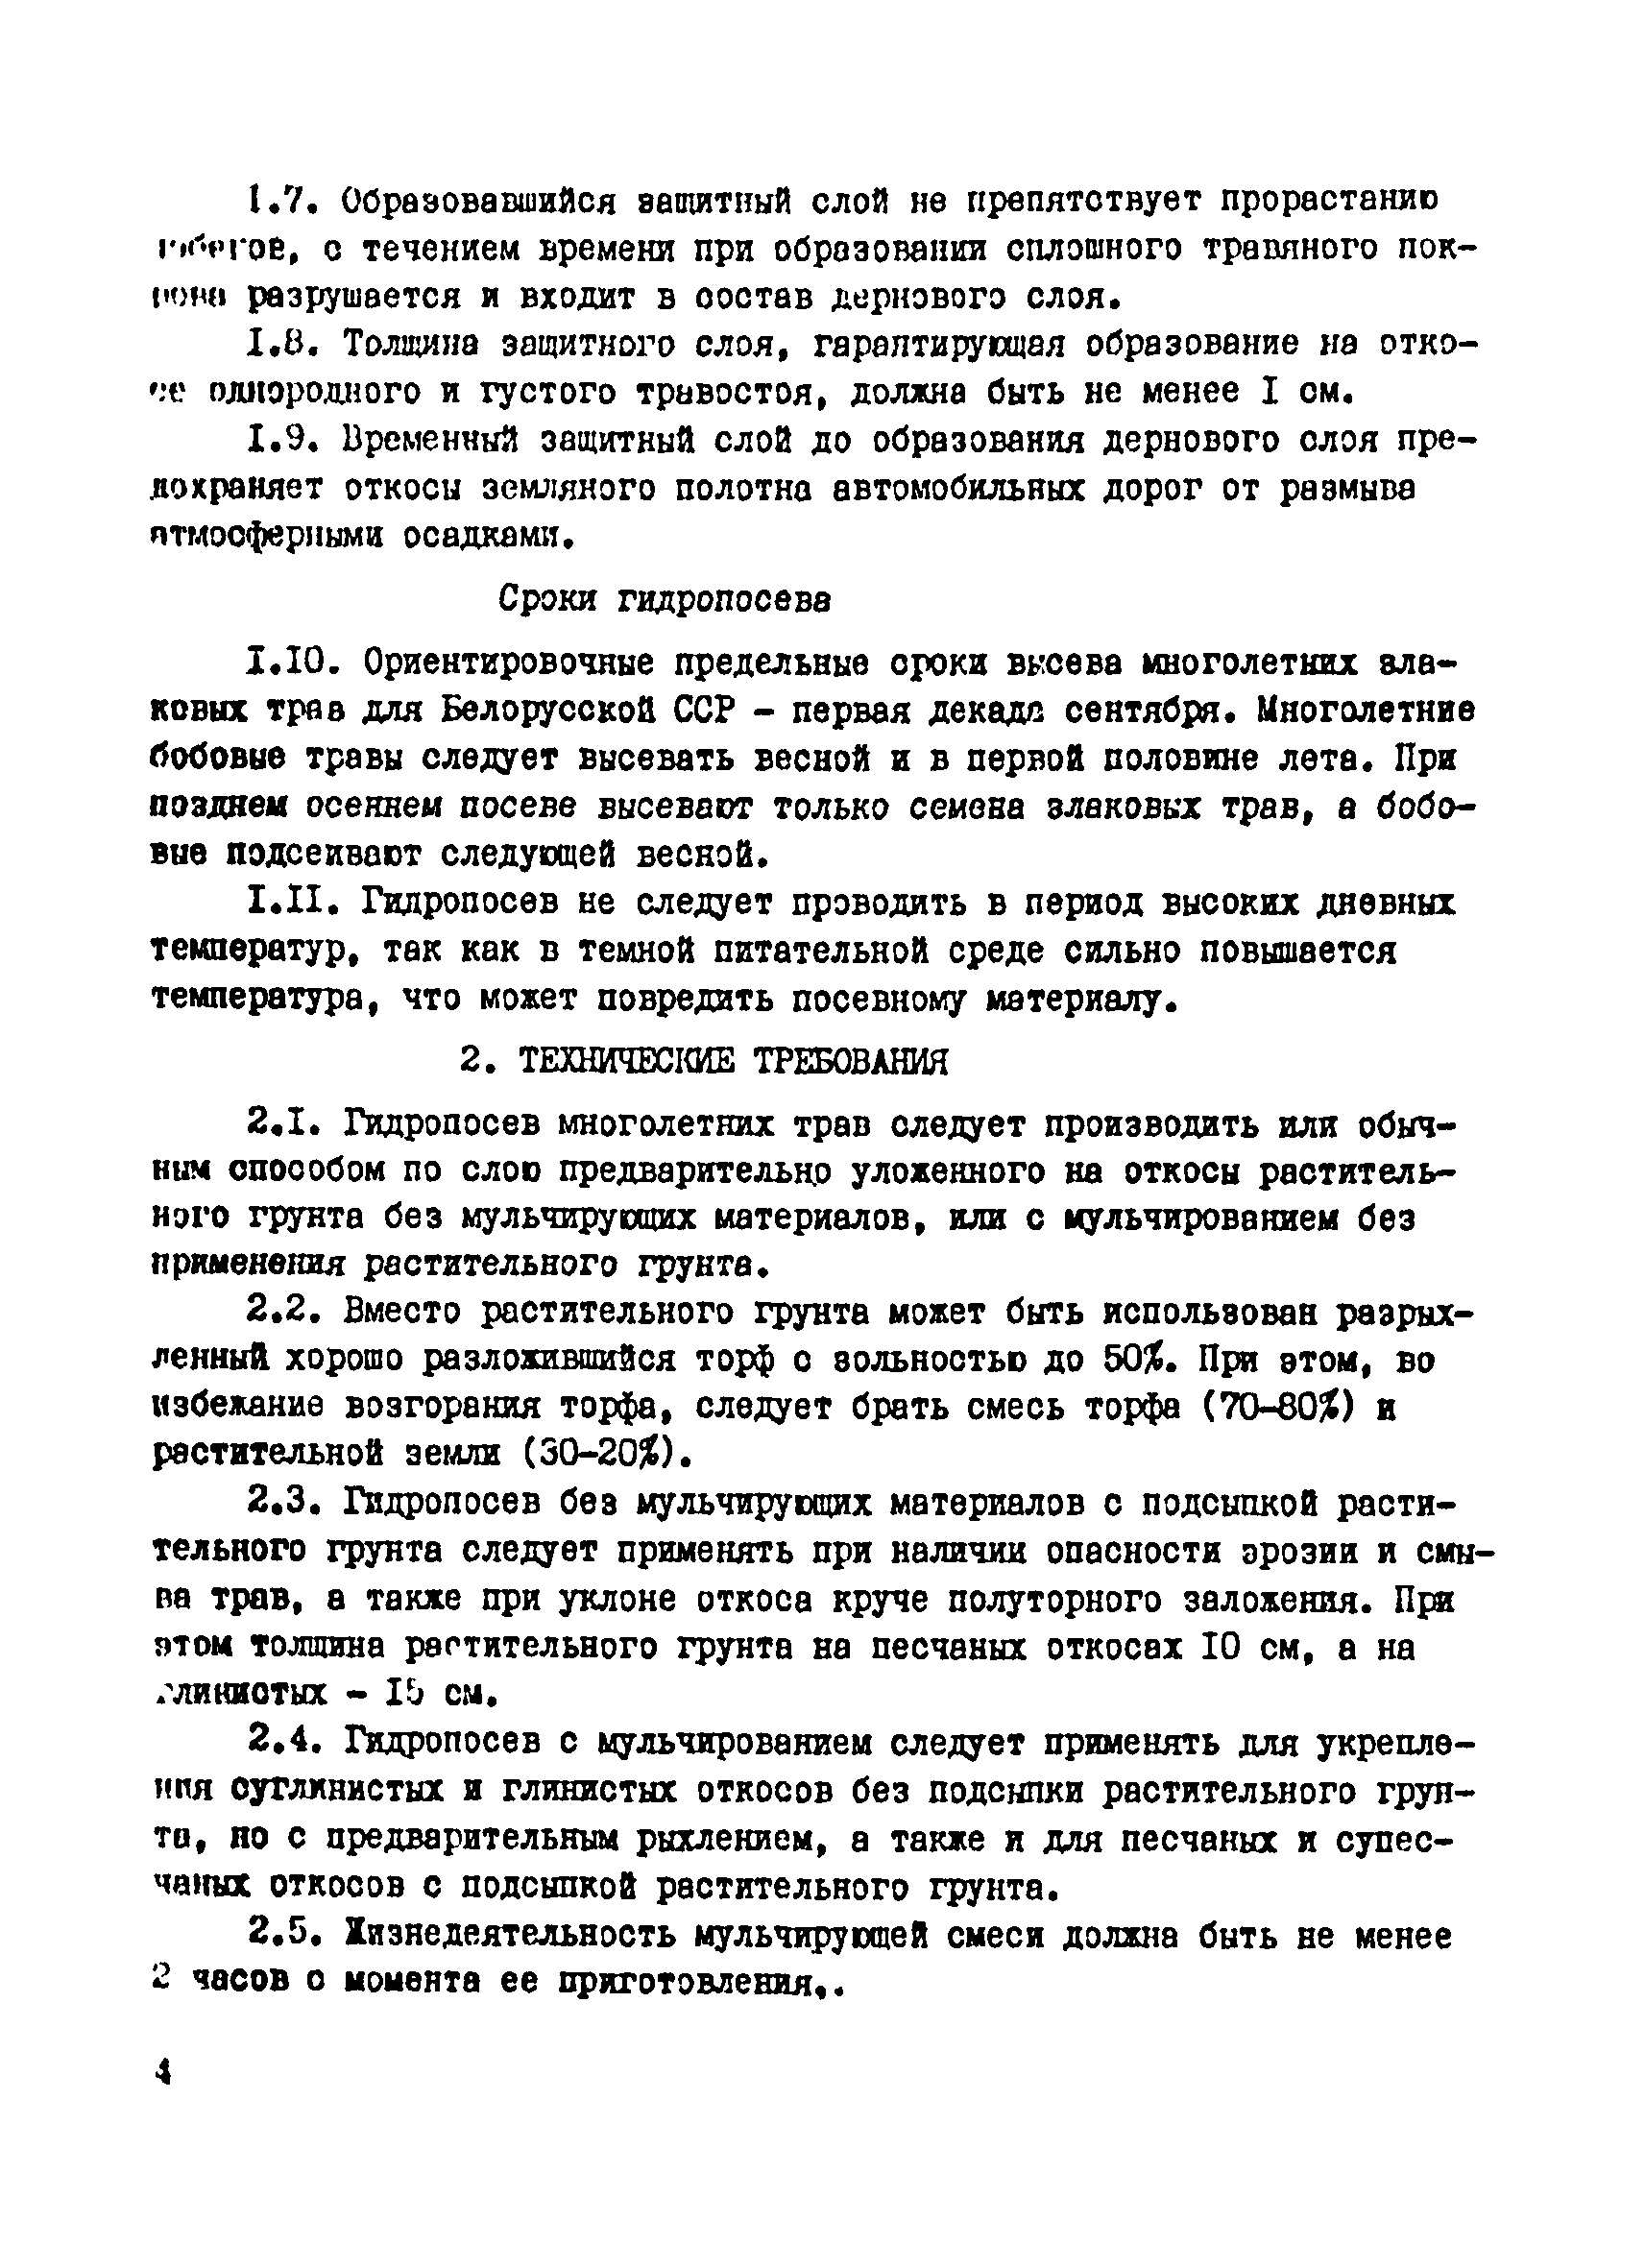 ВСН 17-77/Миндорстрой БССР